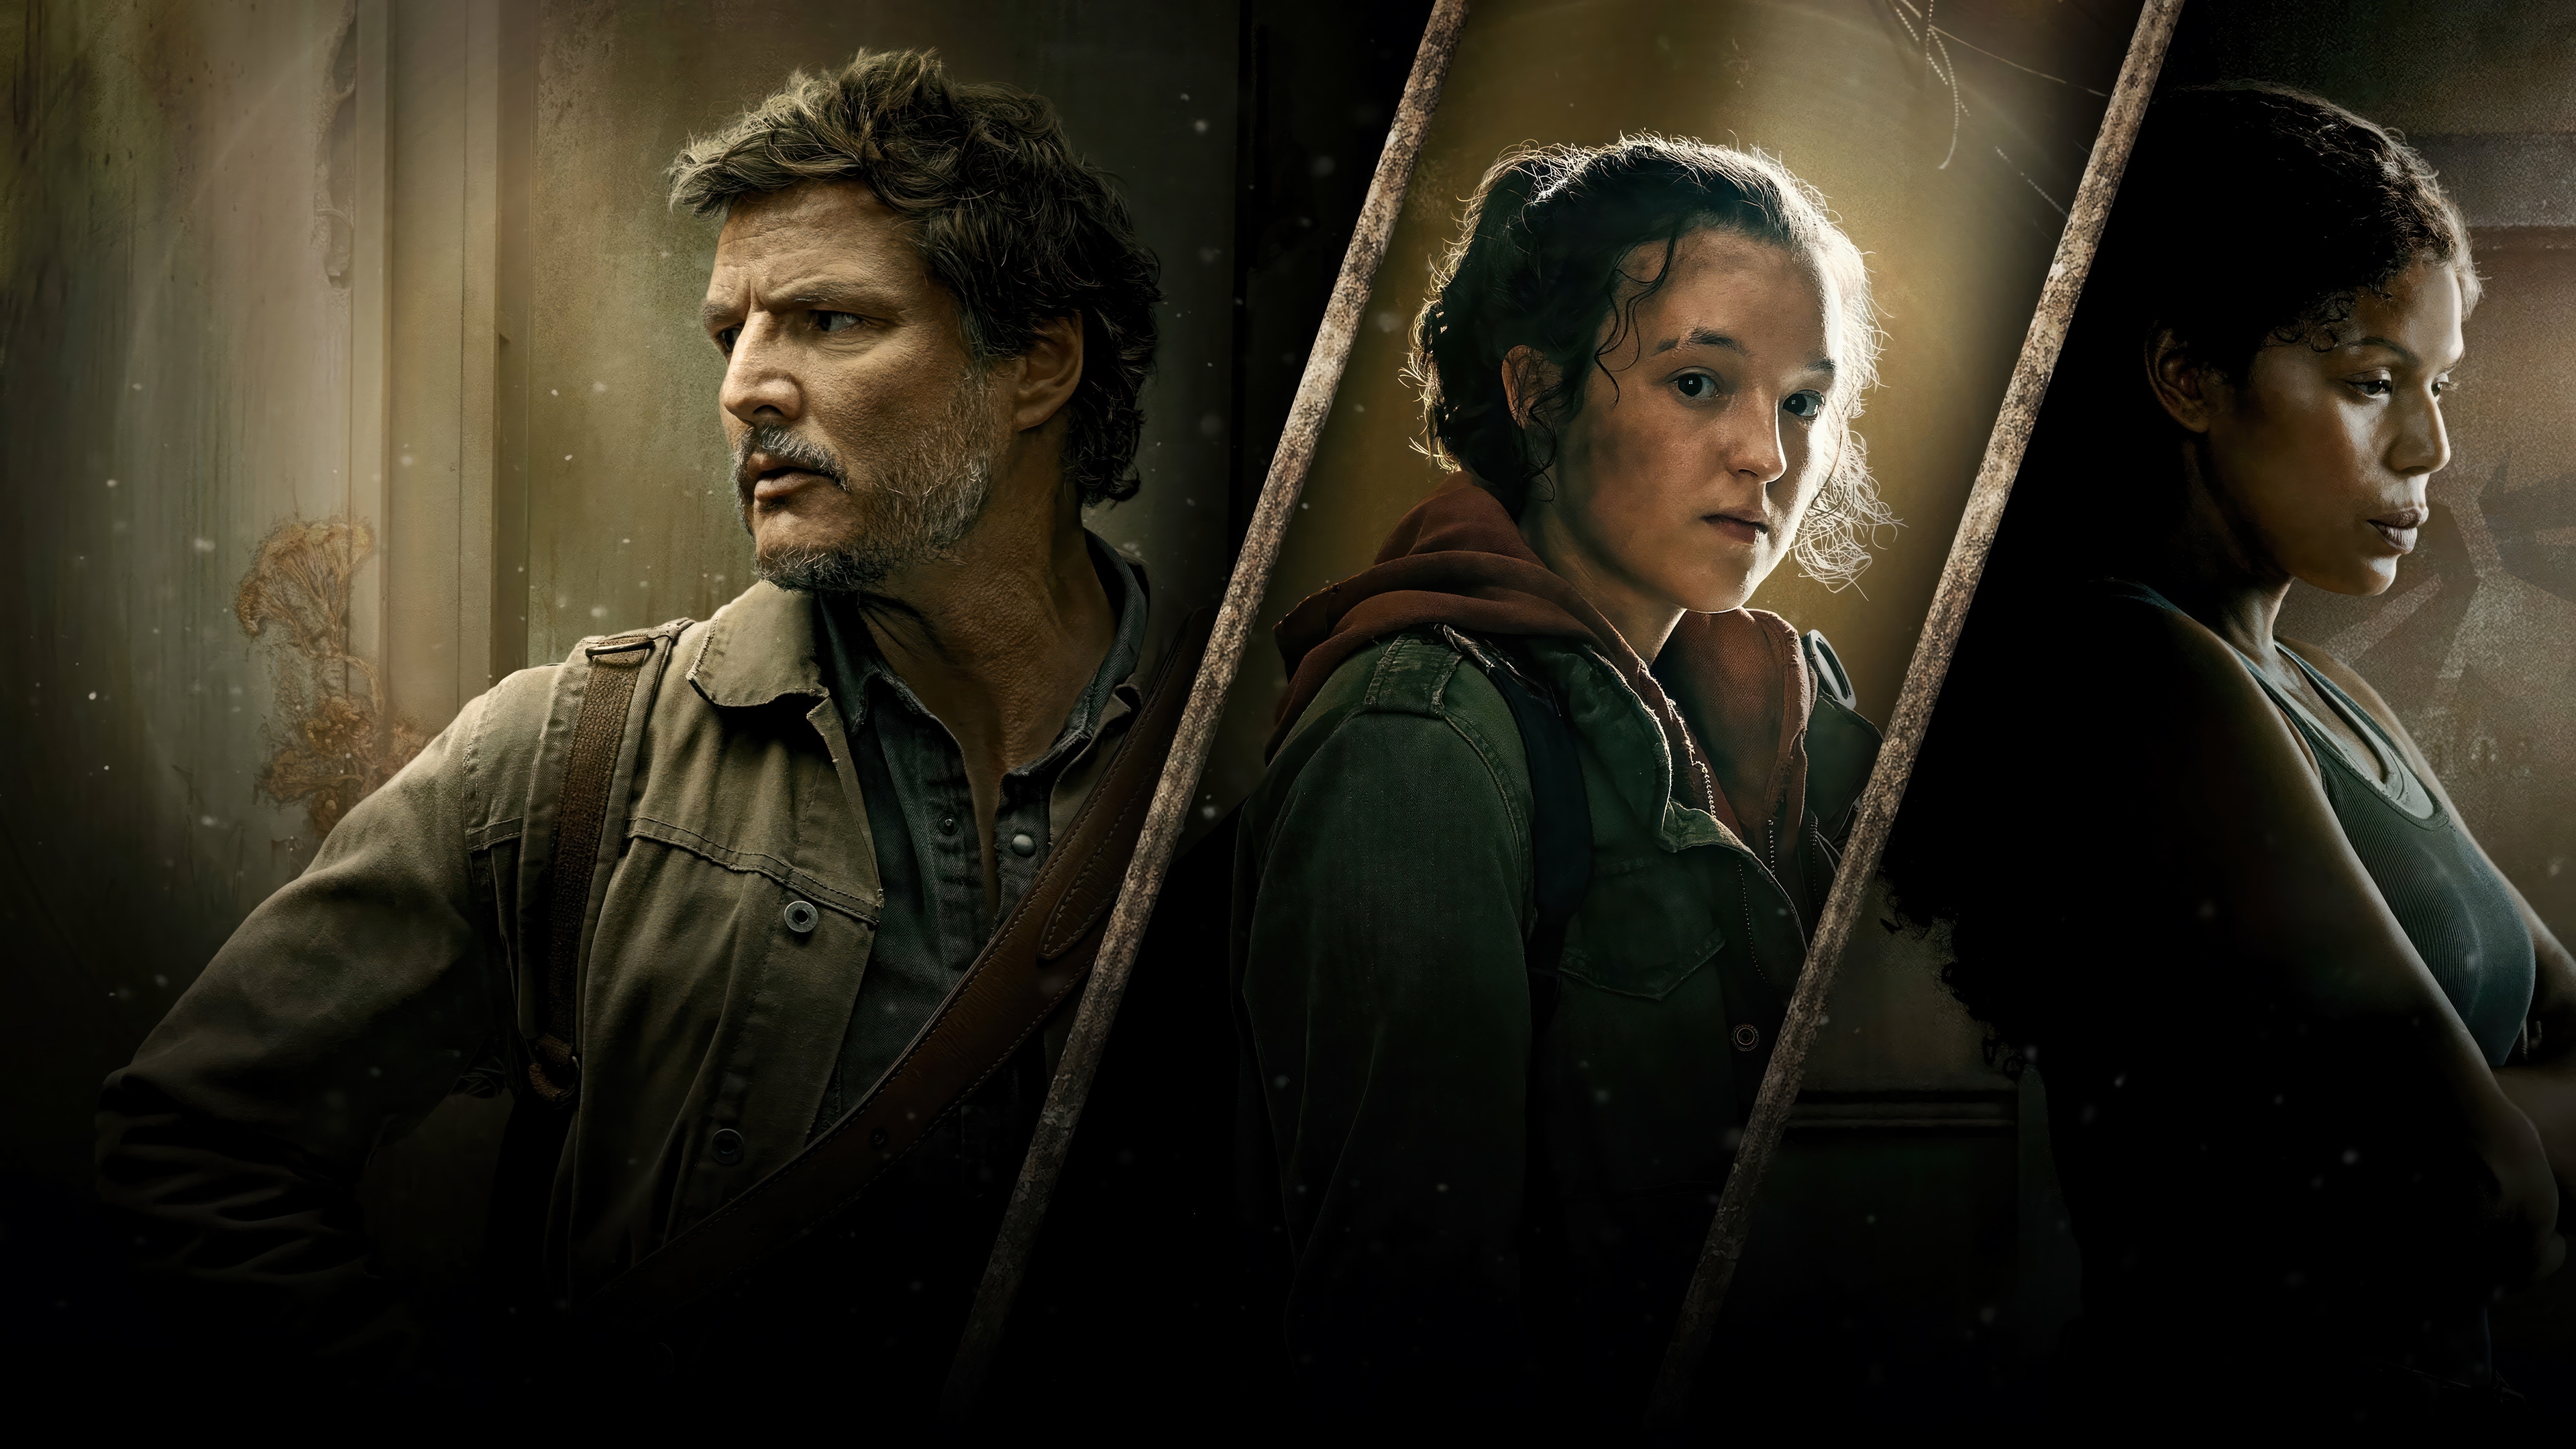 HD wallpaper, The Last Of Us, 2023 Series, Pedro Pascal As Joel, Hbo Series, Ellie Williams, Merle Dandridge As Marlene, Bella Ramsey As Ellie